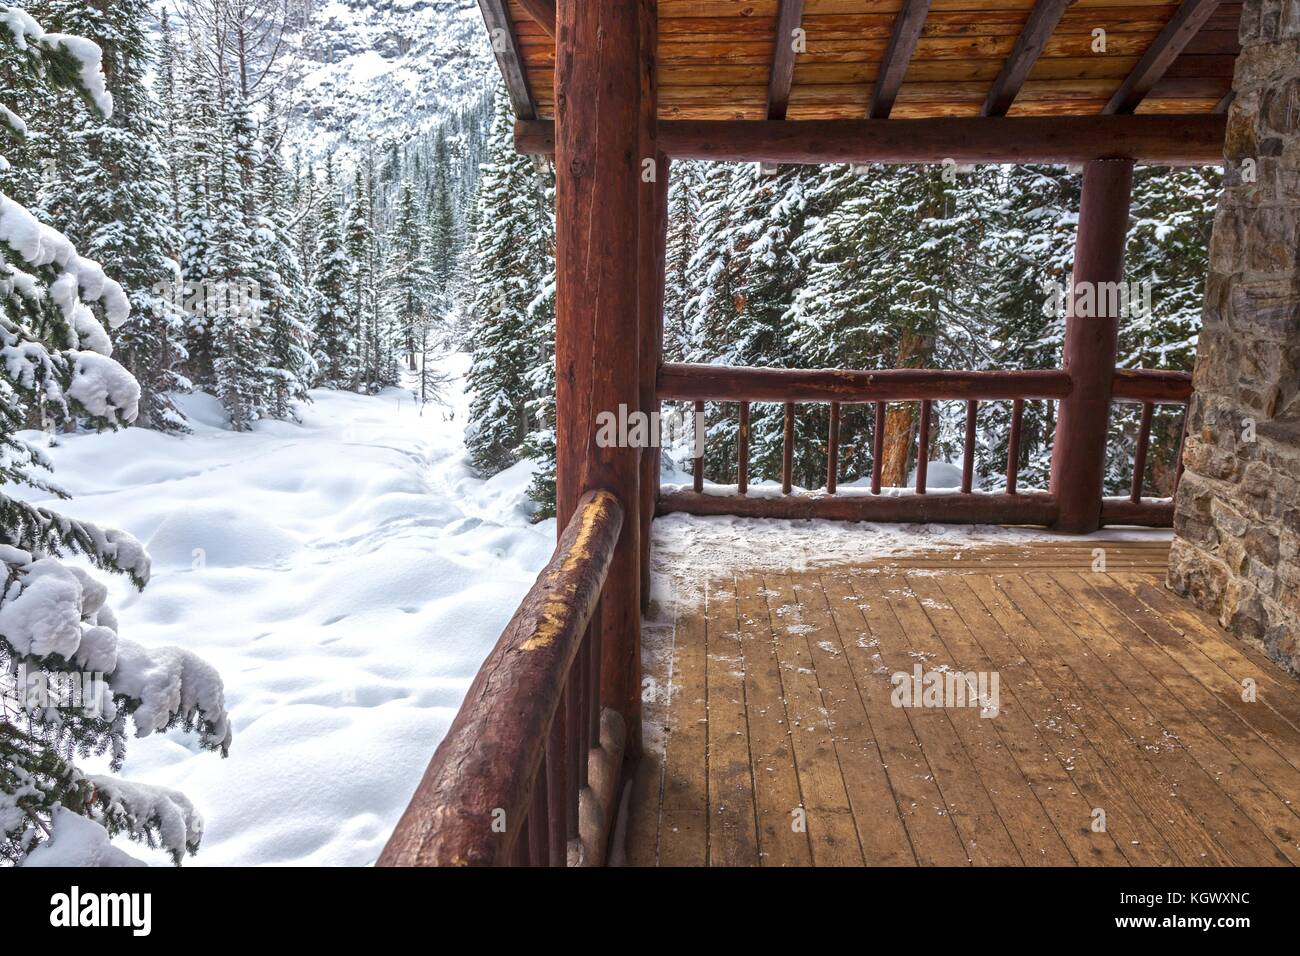 Rustique Vintage Alpine Teahouse Old Log Cabin Porch en bois véranda, paysage de fond de forêt de neige, parc national Banff Canada montagnes Rocheuses hiver Banque D'Images